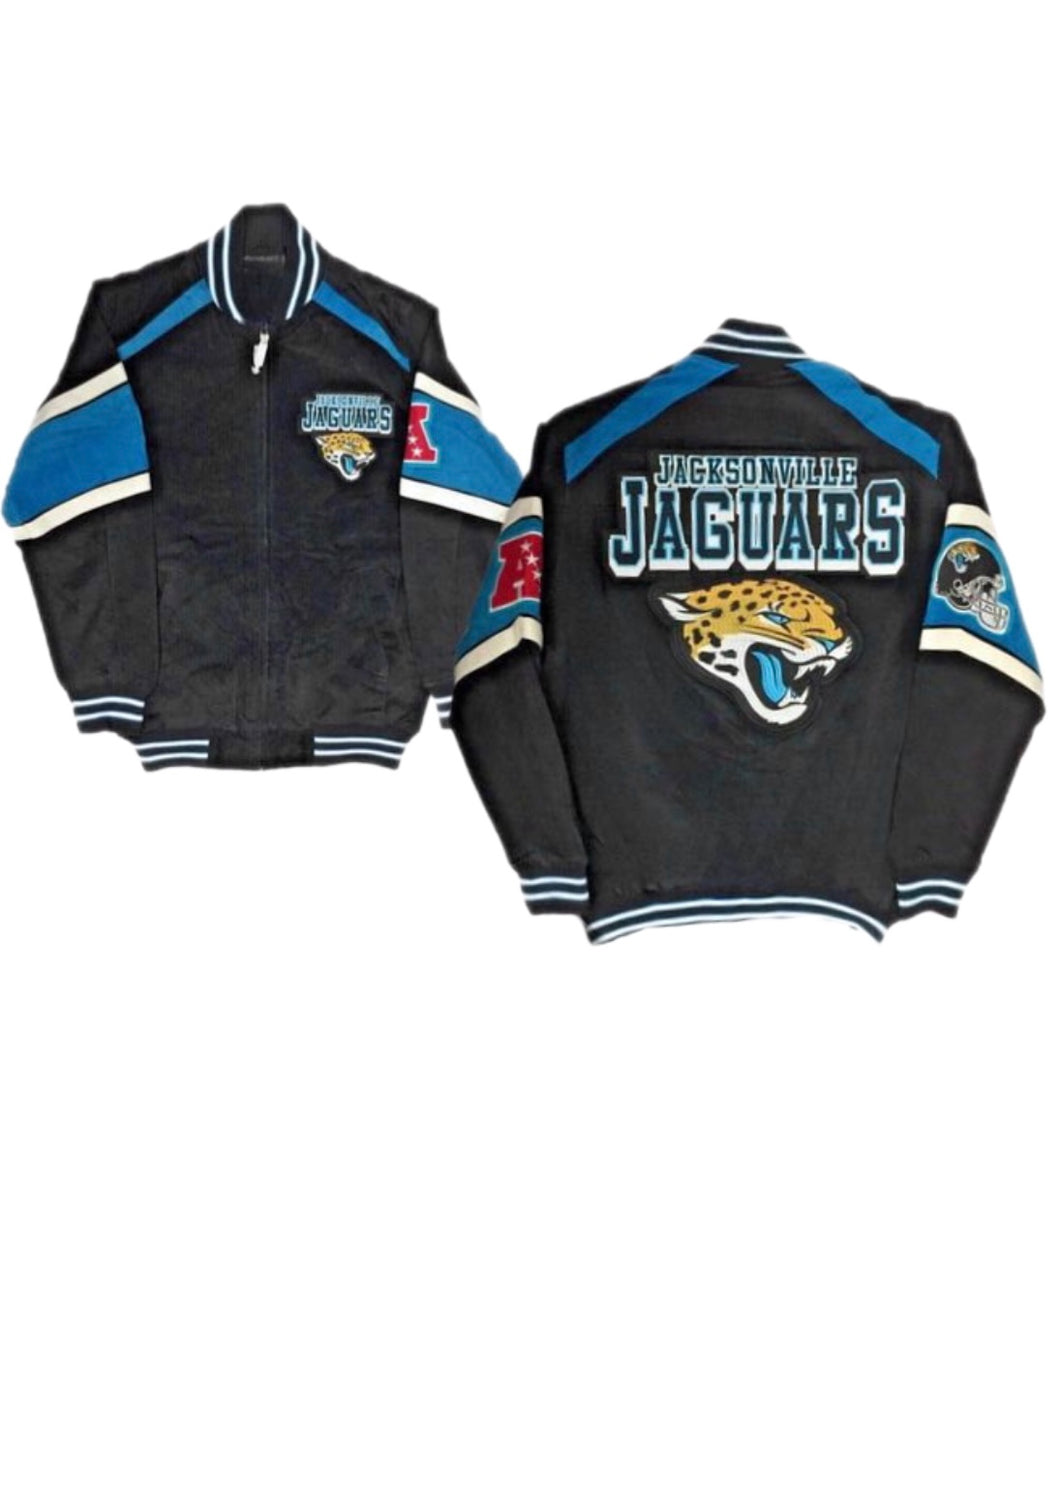 Jacksonville Jaguars, NFL “Rare Find” One of a KIND Vintage Jacket with Crystal Star Design.